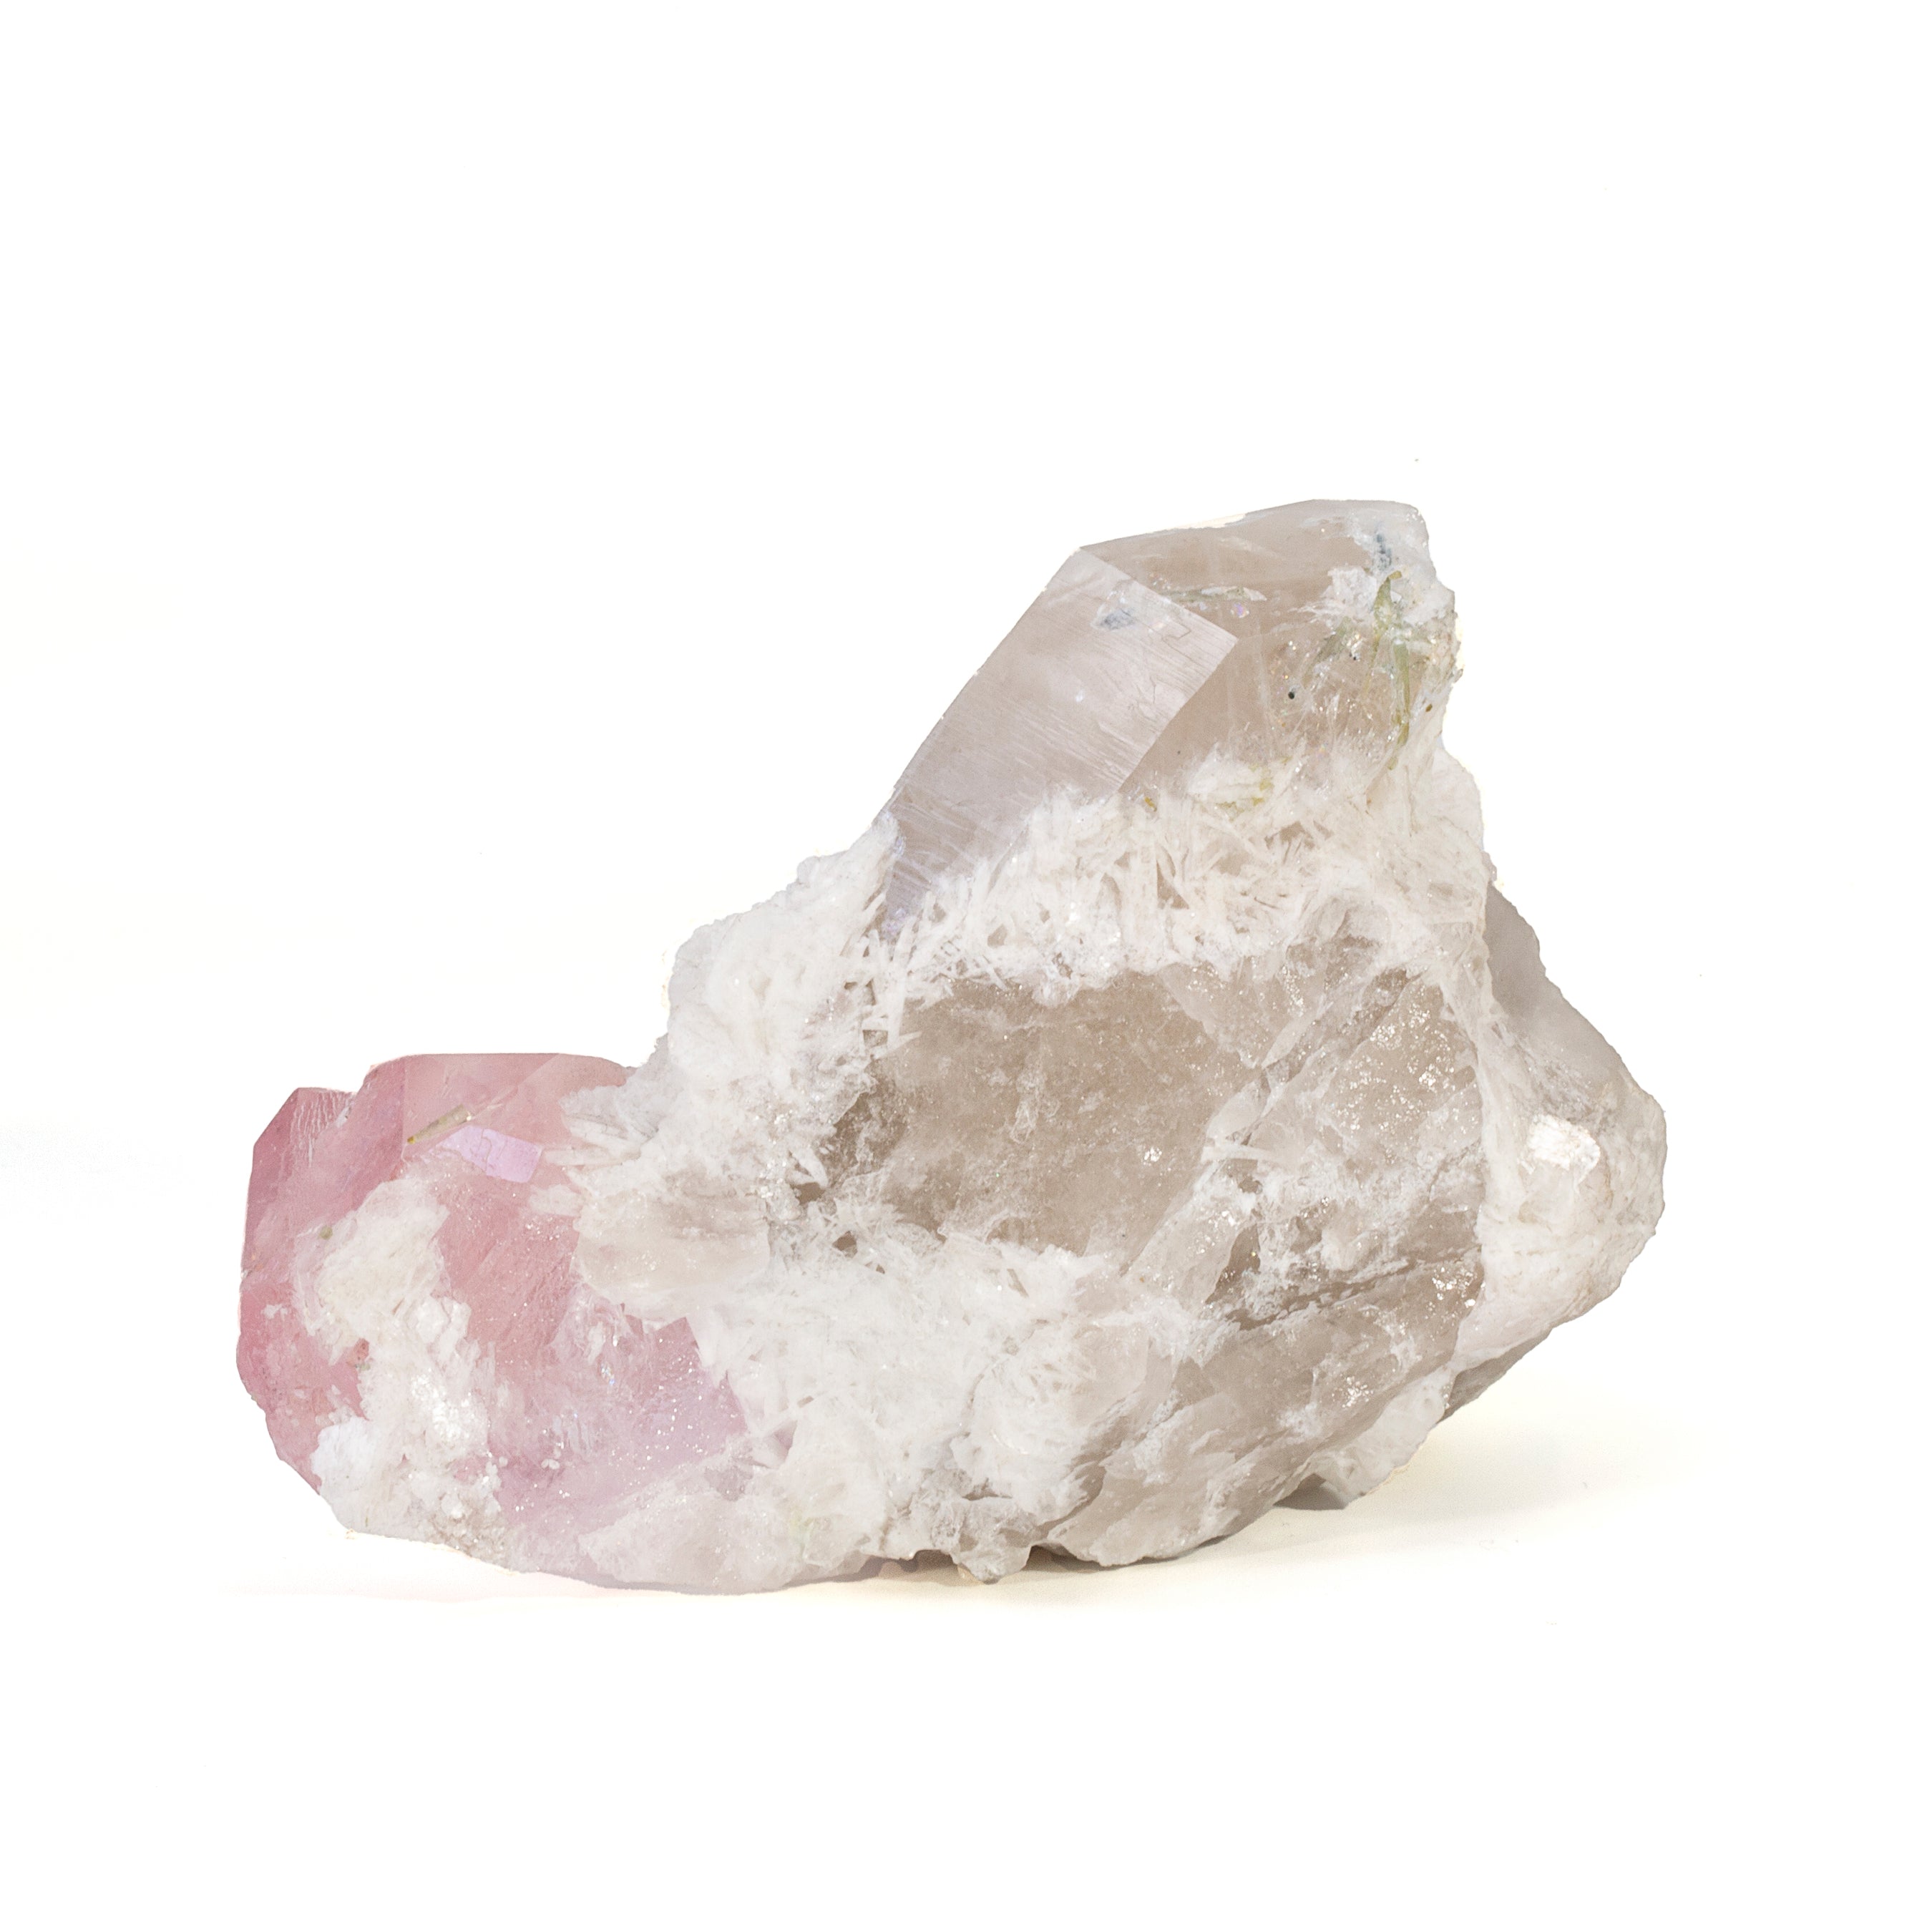 Morganite with Quartz 341 Gram Natural Gem Crystal Specimen - Afghanistan - YX-520 - Crystalarium